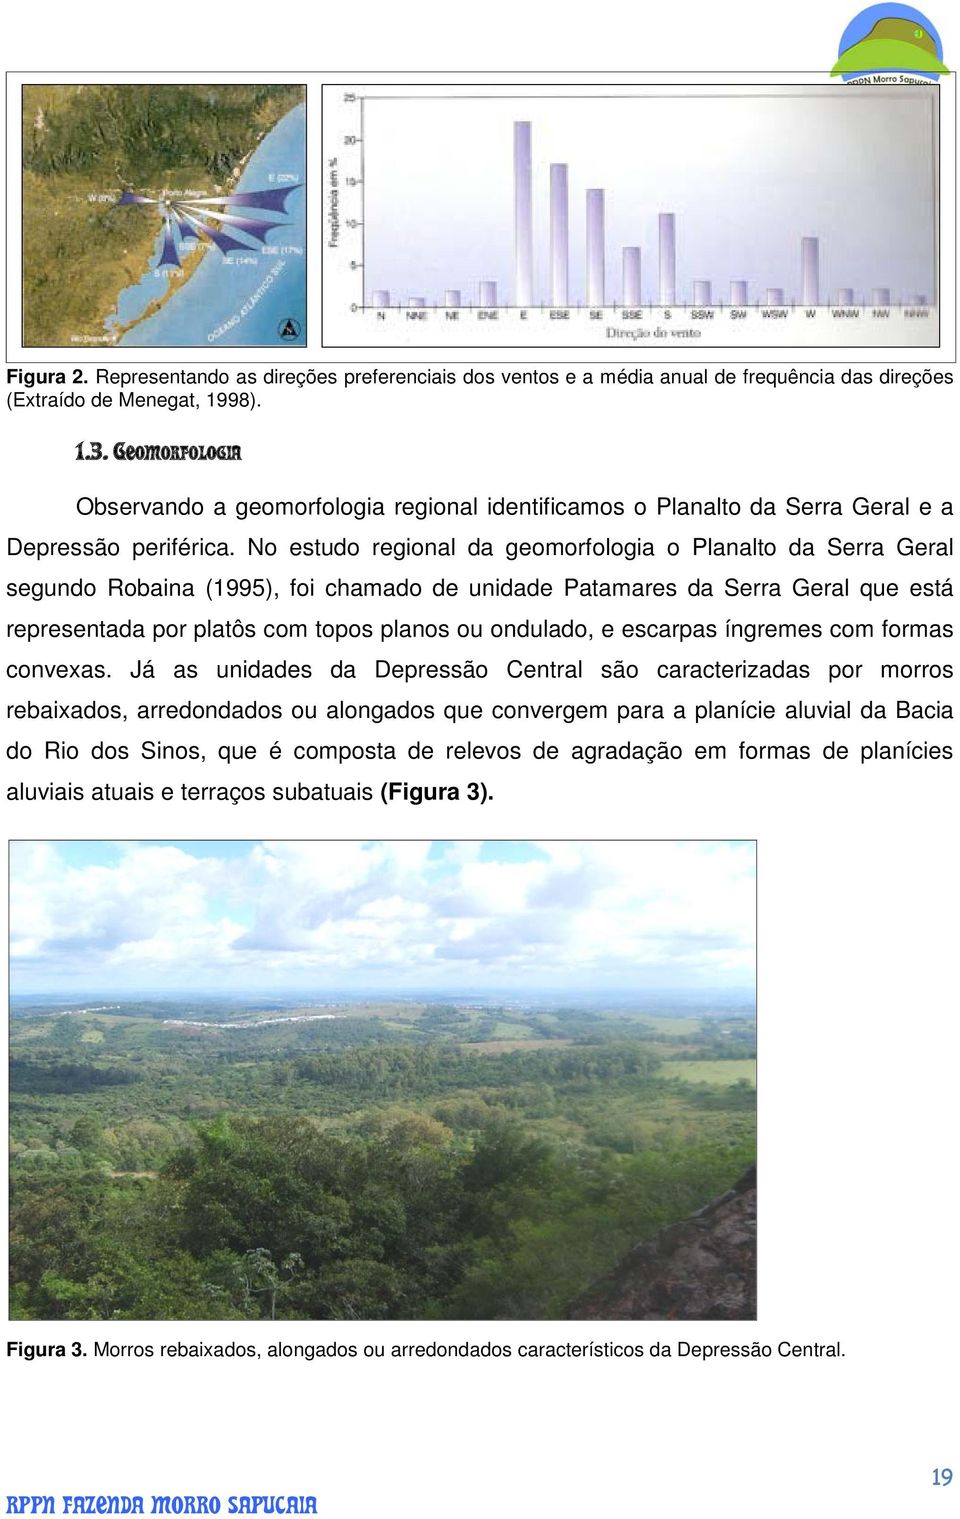 No estudo regional da geomorfologia o Planalto da Serra Geral segundo Robaina (1995), foi chamado de unidade Patamares da Serra Geral que está representada por platôs com topos planos ou ondulado, e